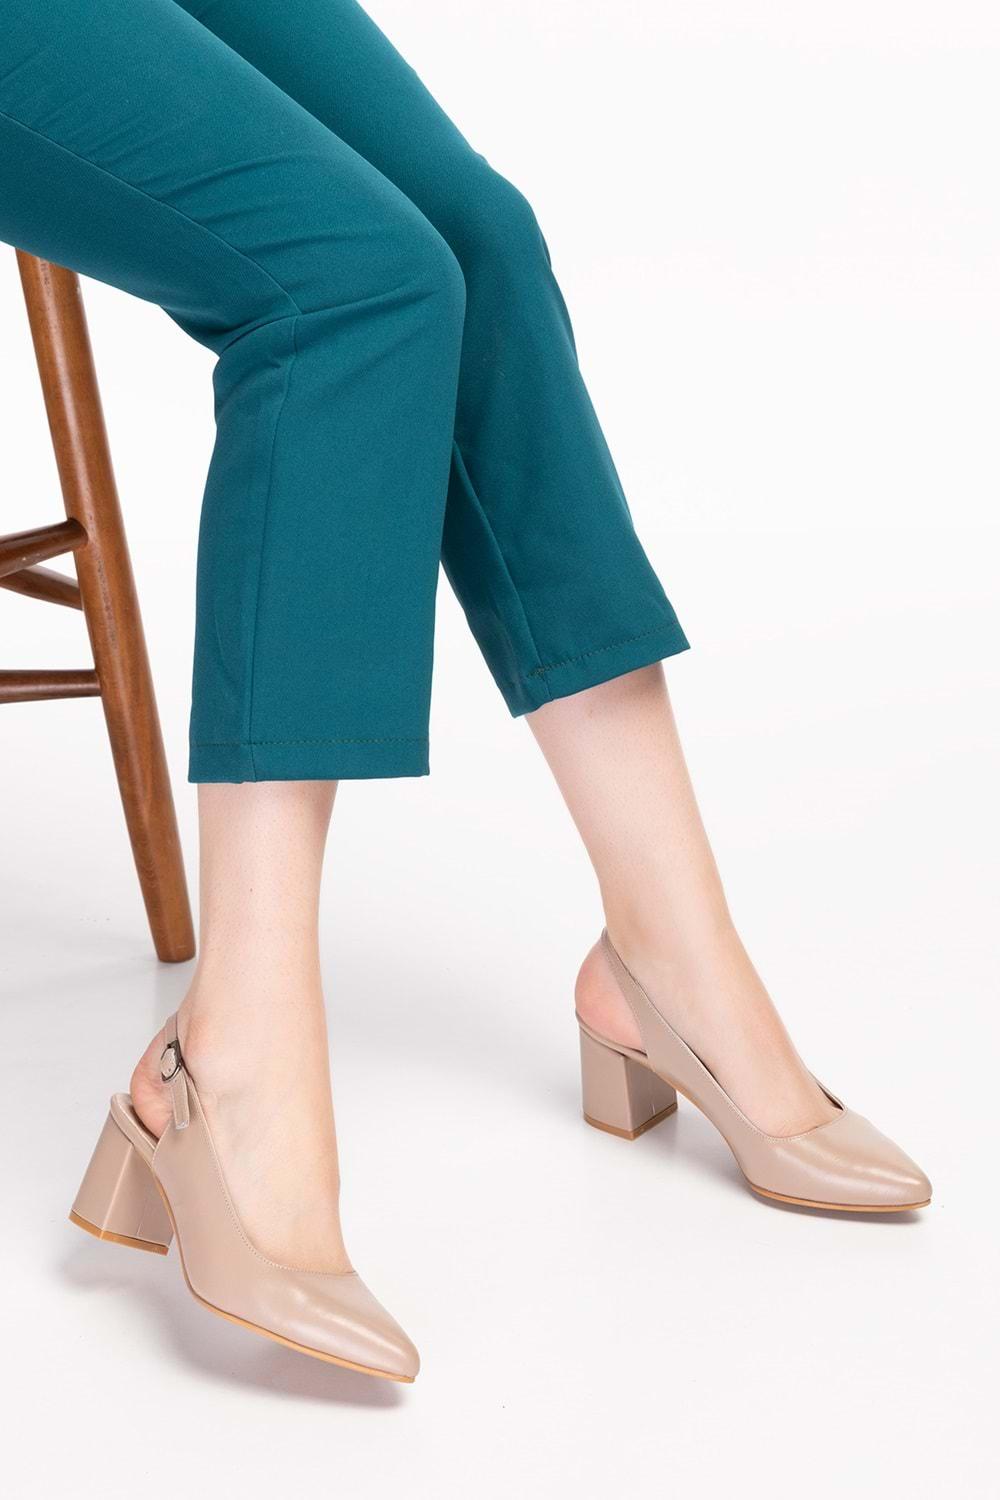 Gondol Kadın Hakiki Deri Klasik Topuklu Ayakkabı şhn.0034 - Vizon - 36